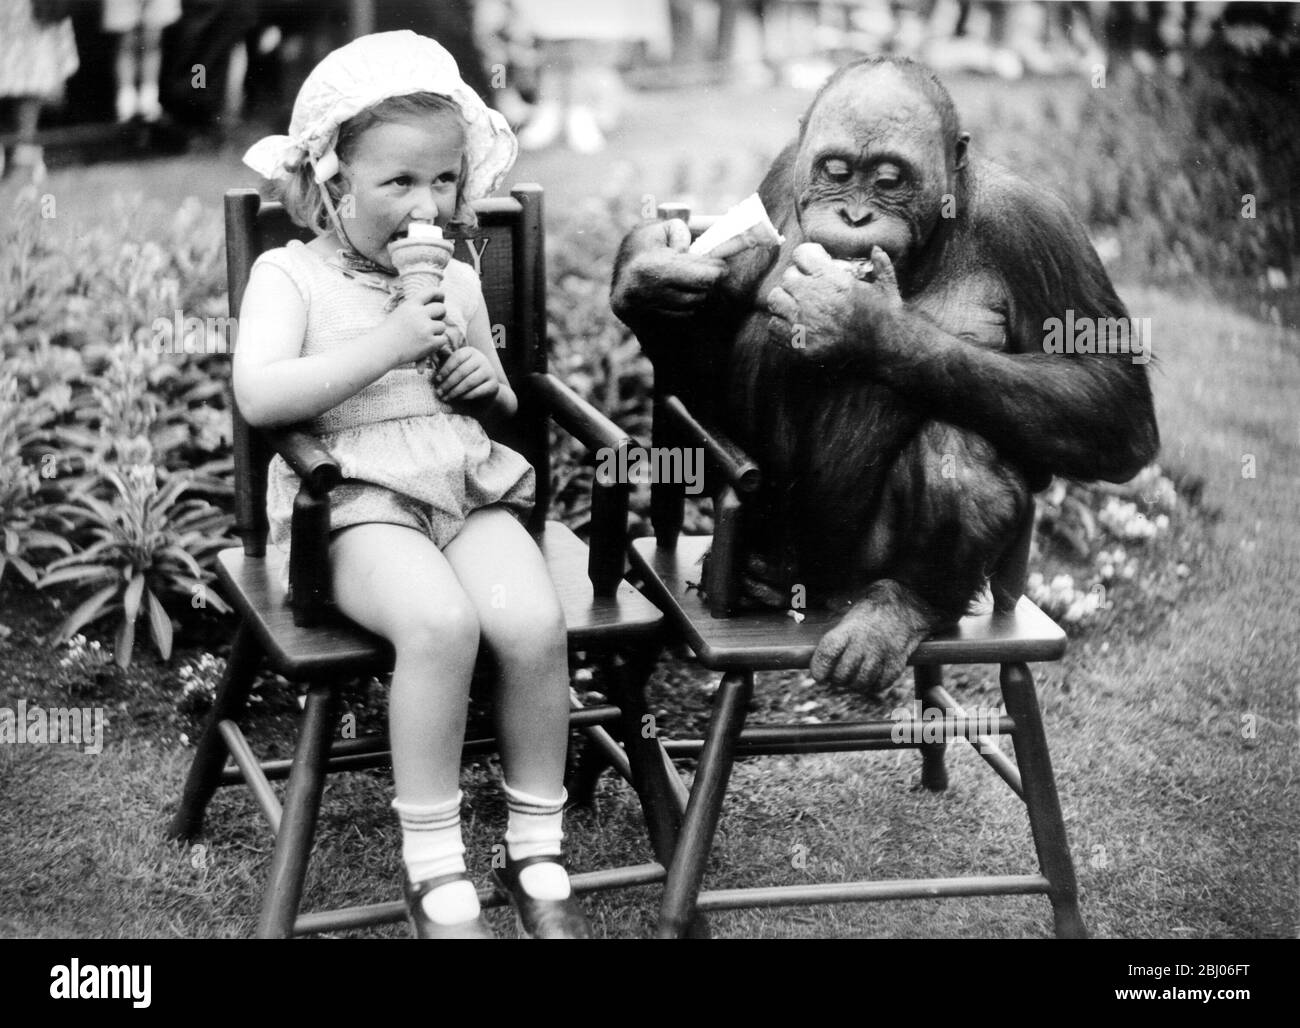 Ogni bambino ama il gelato, ma anche Spike, l'Orang OUtan allo Zoo di Londra. Quando Little Carol Phillips si stabilì su una sedia per godere del suo cornet gelato, attirò l'attenzione di Spike che decise che anche lui avrebbe voluto. A giudicare dall'espressione sul suo volto, lo trovò a suo piacimento, anche se la freddezza del ghiaccio gli fece togliere il respiro al primo morso. - 30 giugno 1949 Foto Stock